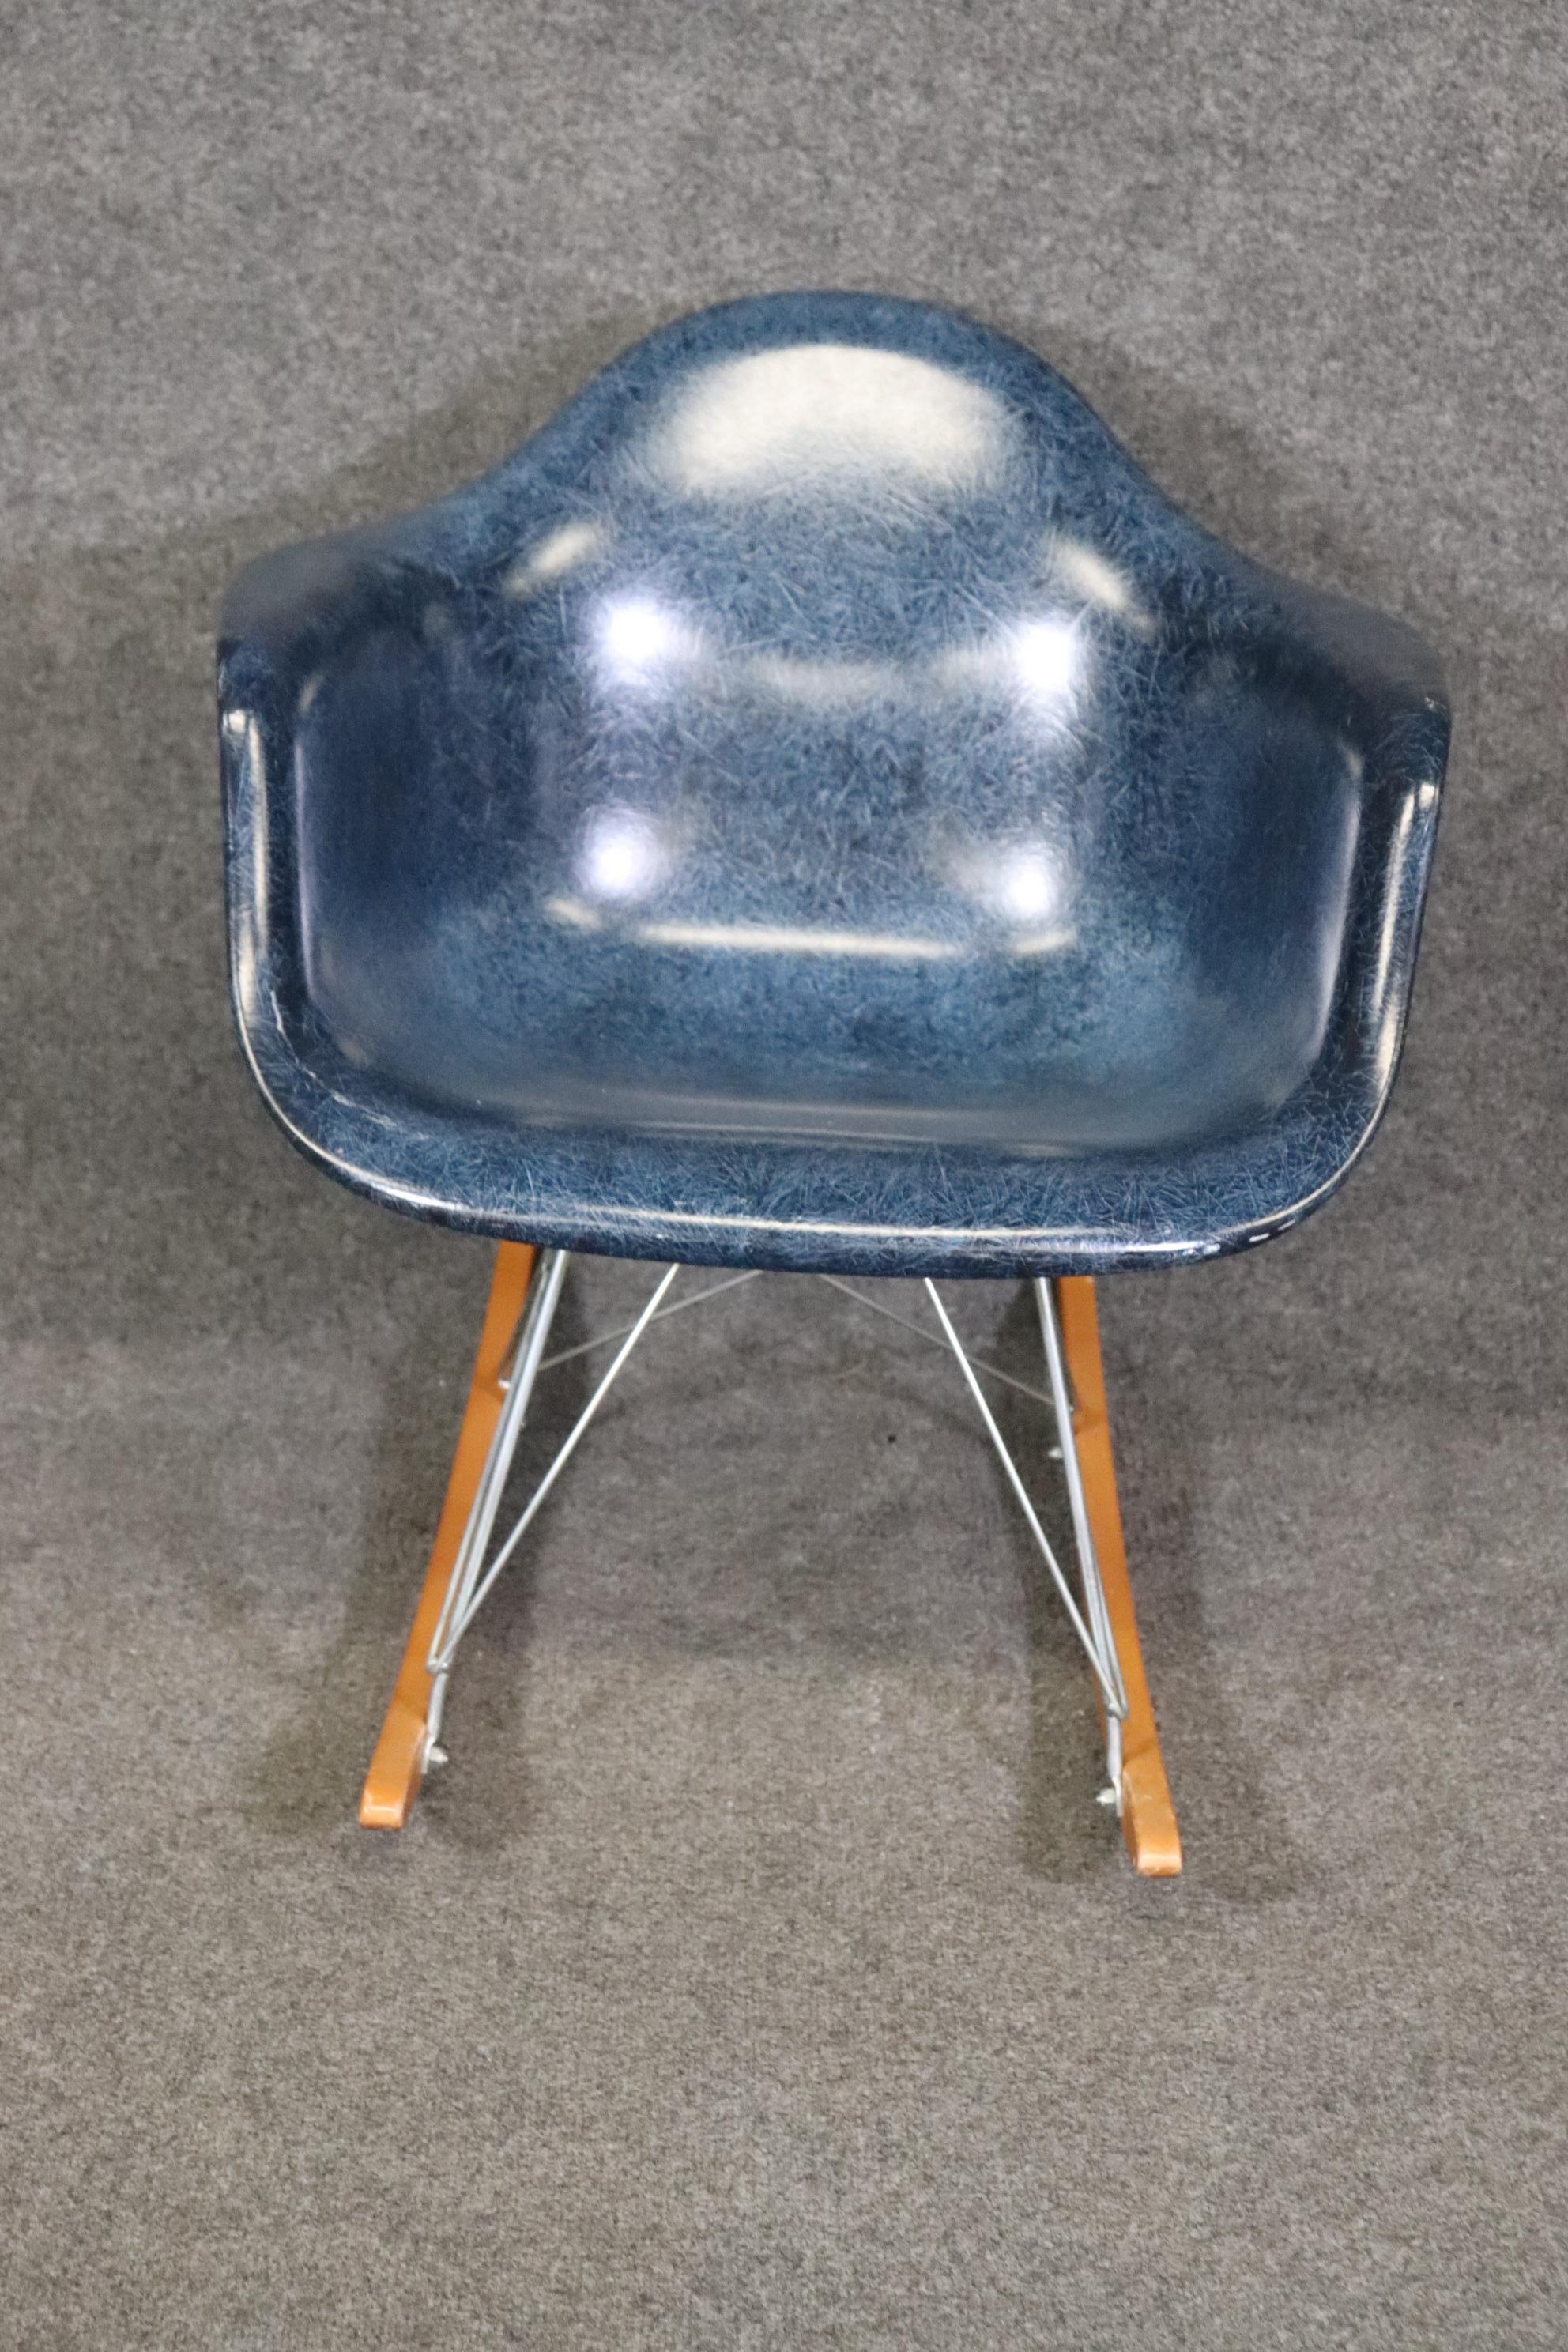 Dimensions- H : 27 1/2in W : 25in D : 27 1/4in SH : 17 1/2in

Ce fauteuil à bascule Eames for Modernica est une véritable œuvre d'art !  Si vous regardez les photos fournies, vous pouvez voir la chaise en fibre de verre moulée avec une assise en